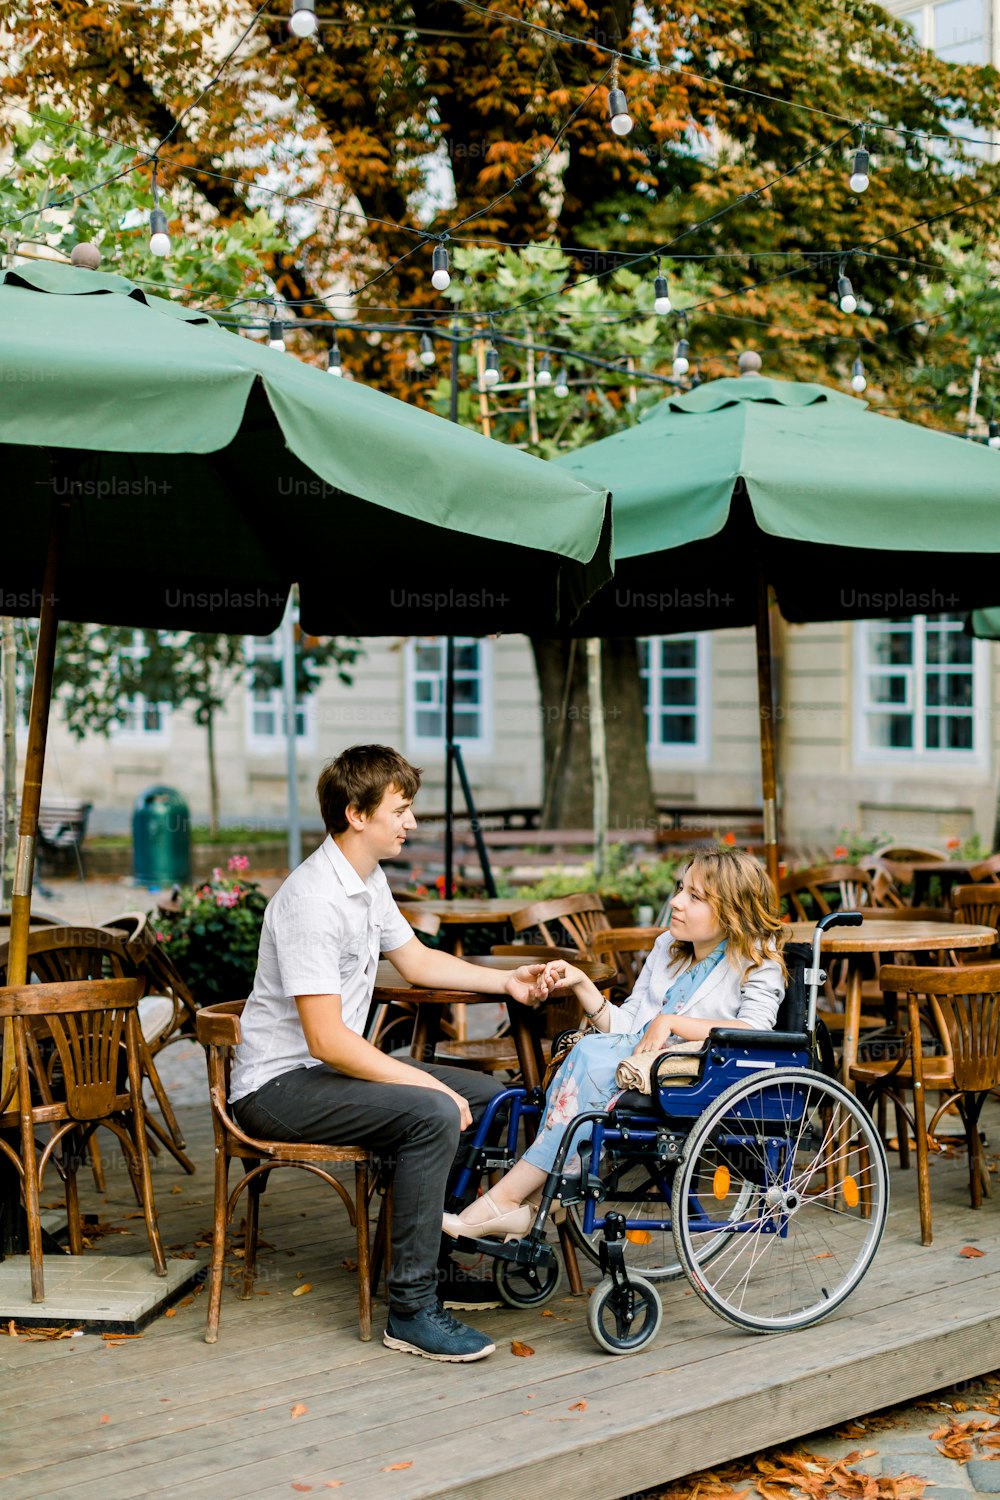 Giovane bella donna in sedia a rotelle che trascorre del tempo insieme al fidanzato maschio, tenendosi per mano, al caffè all'aperto nel centro storico della città.